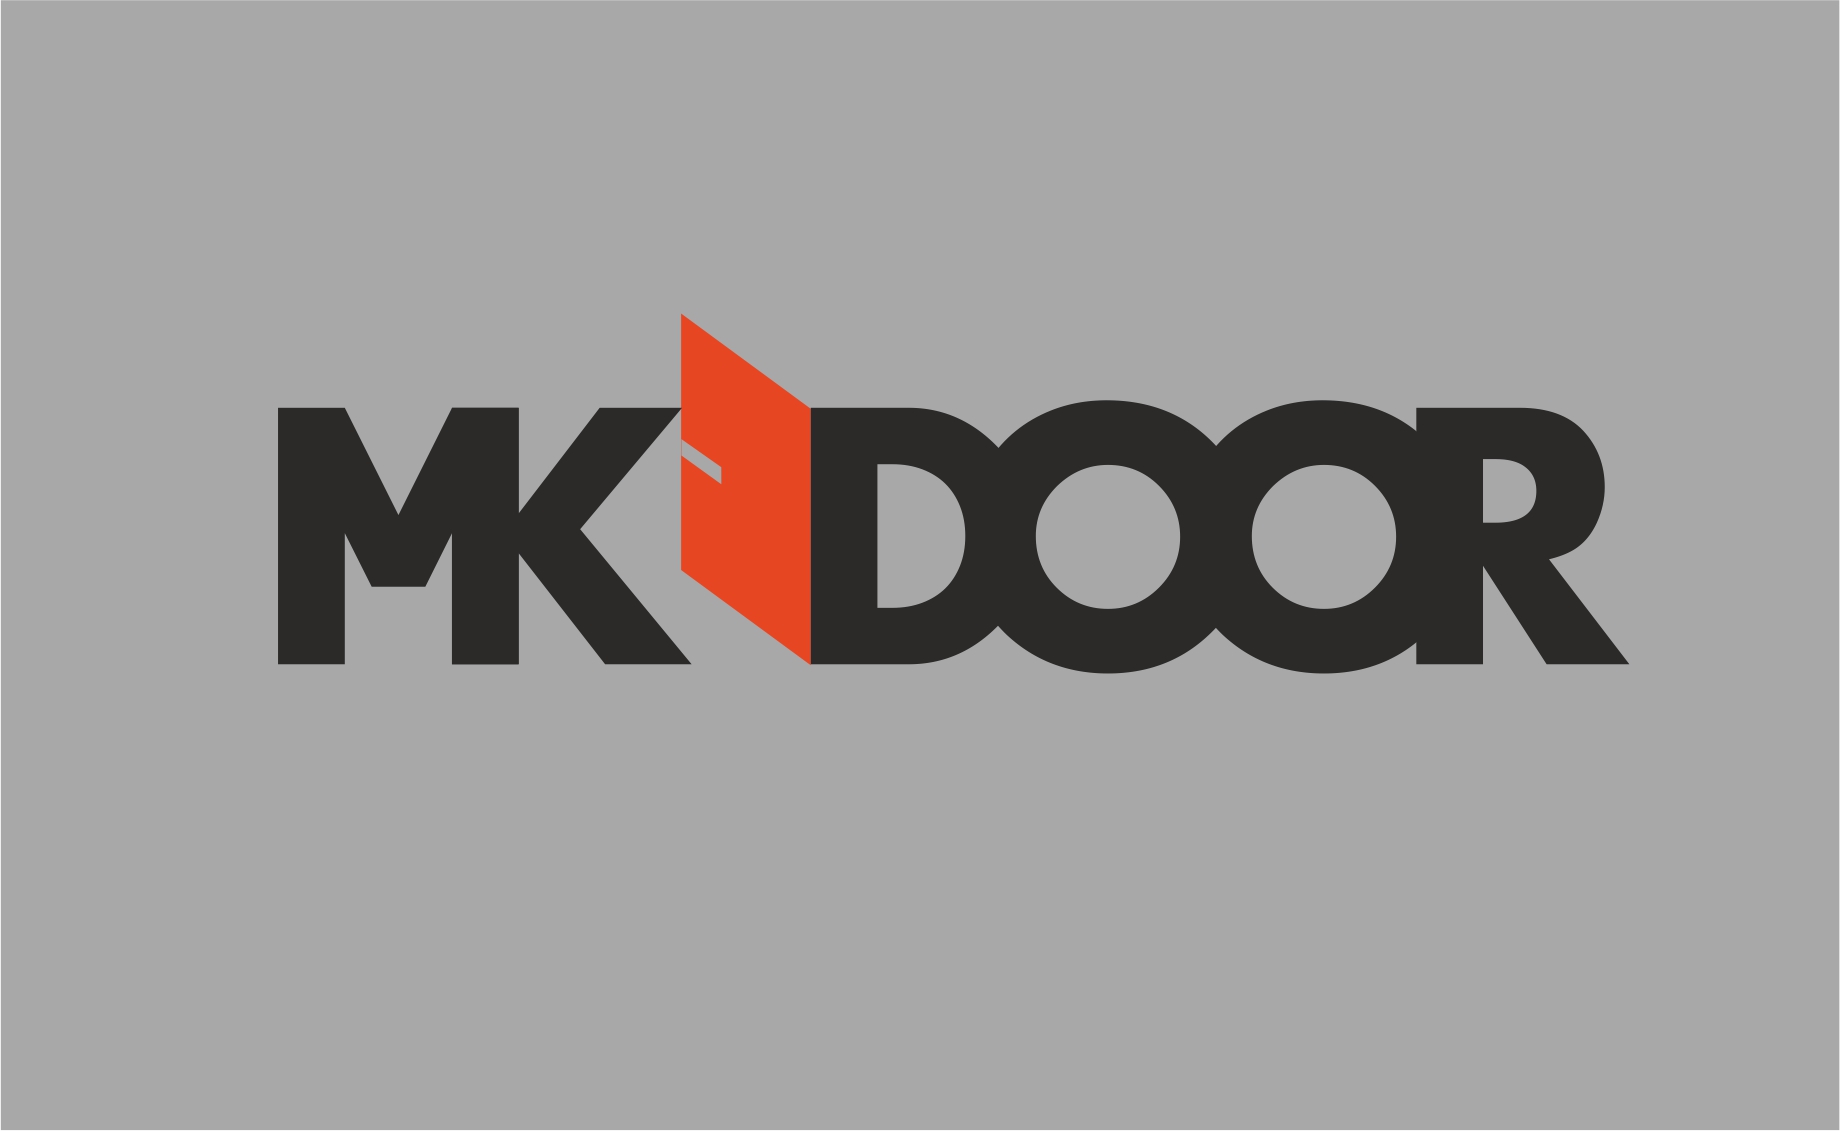 MK-door